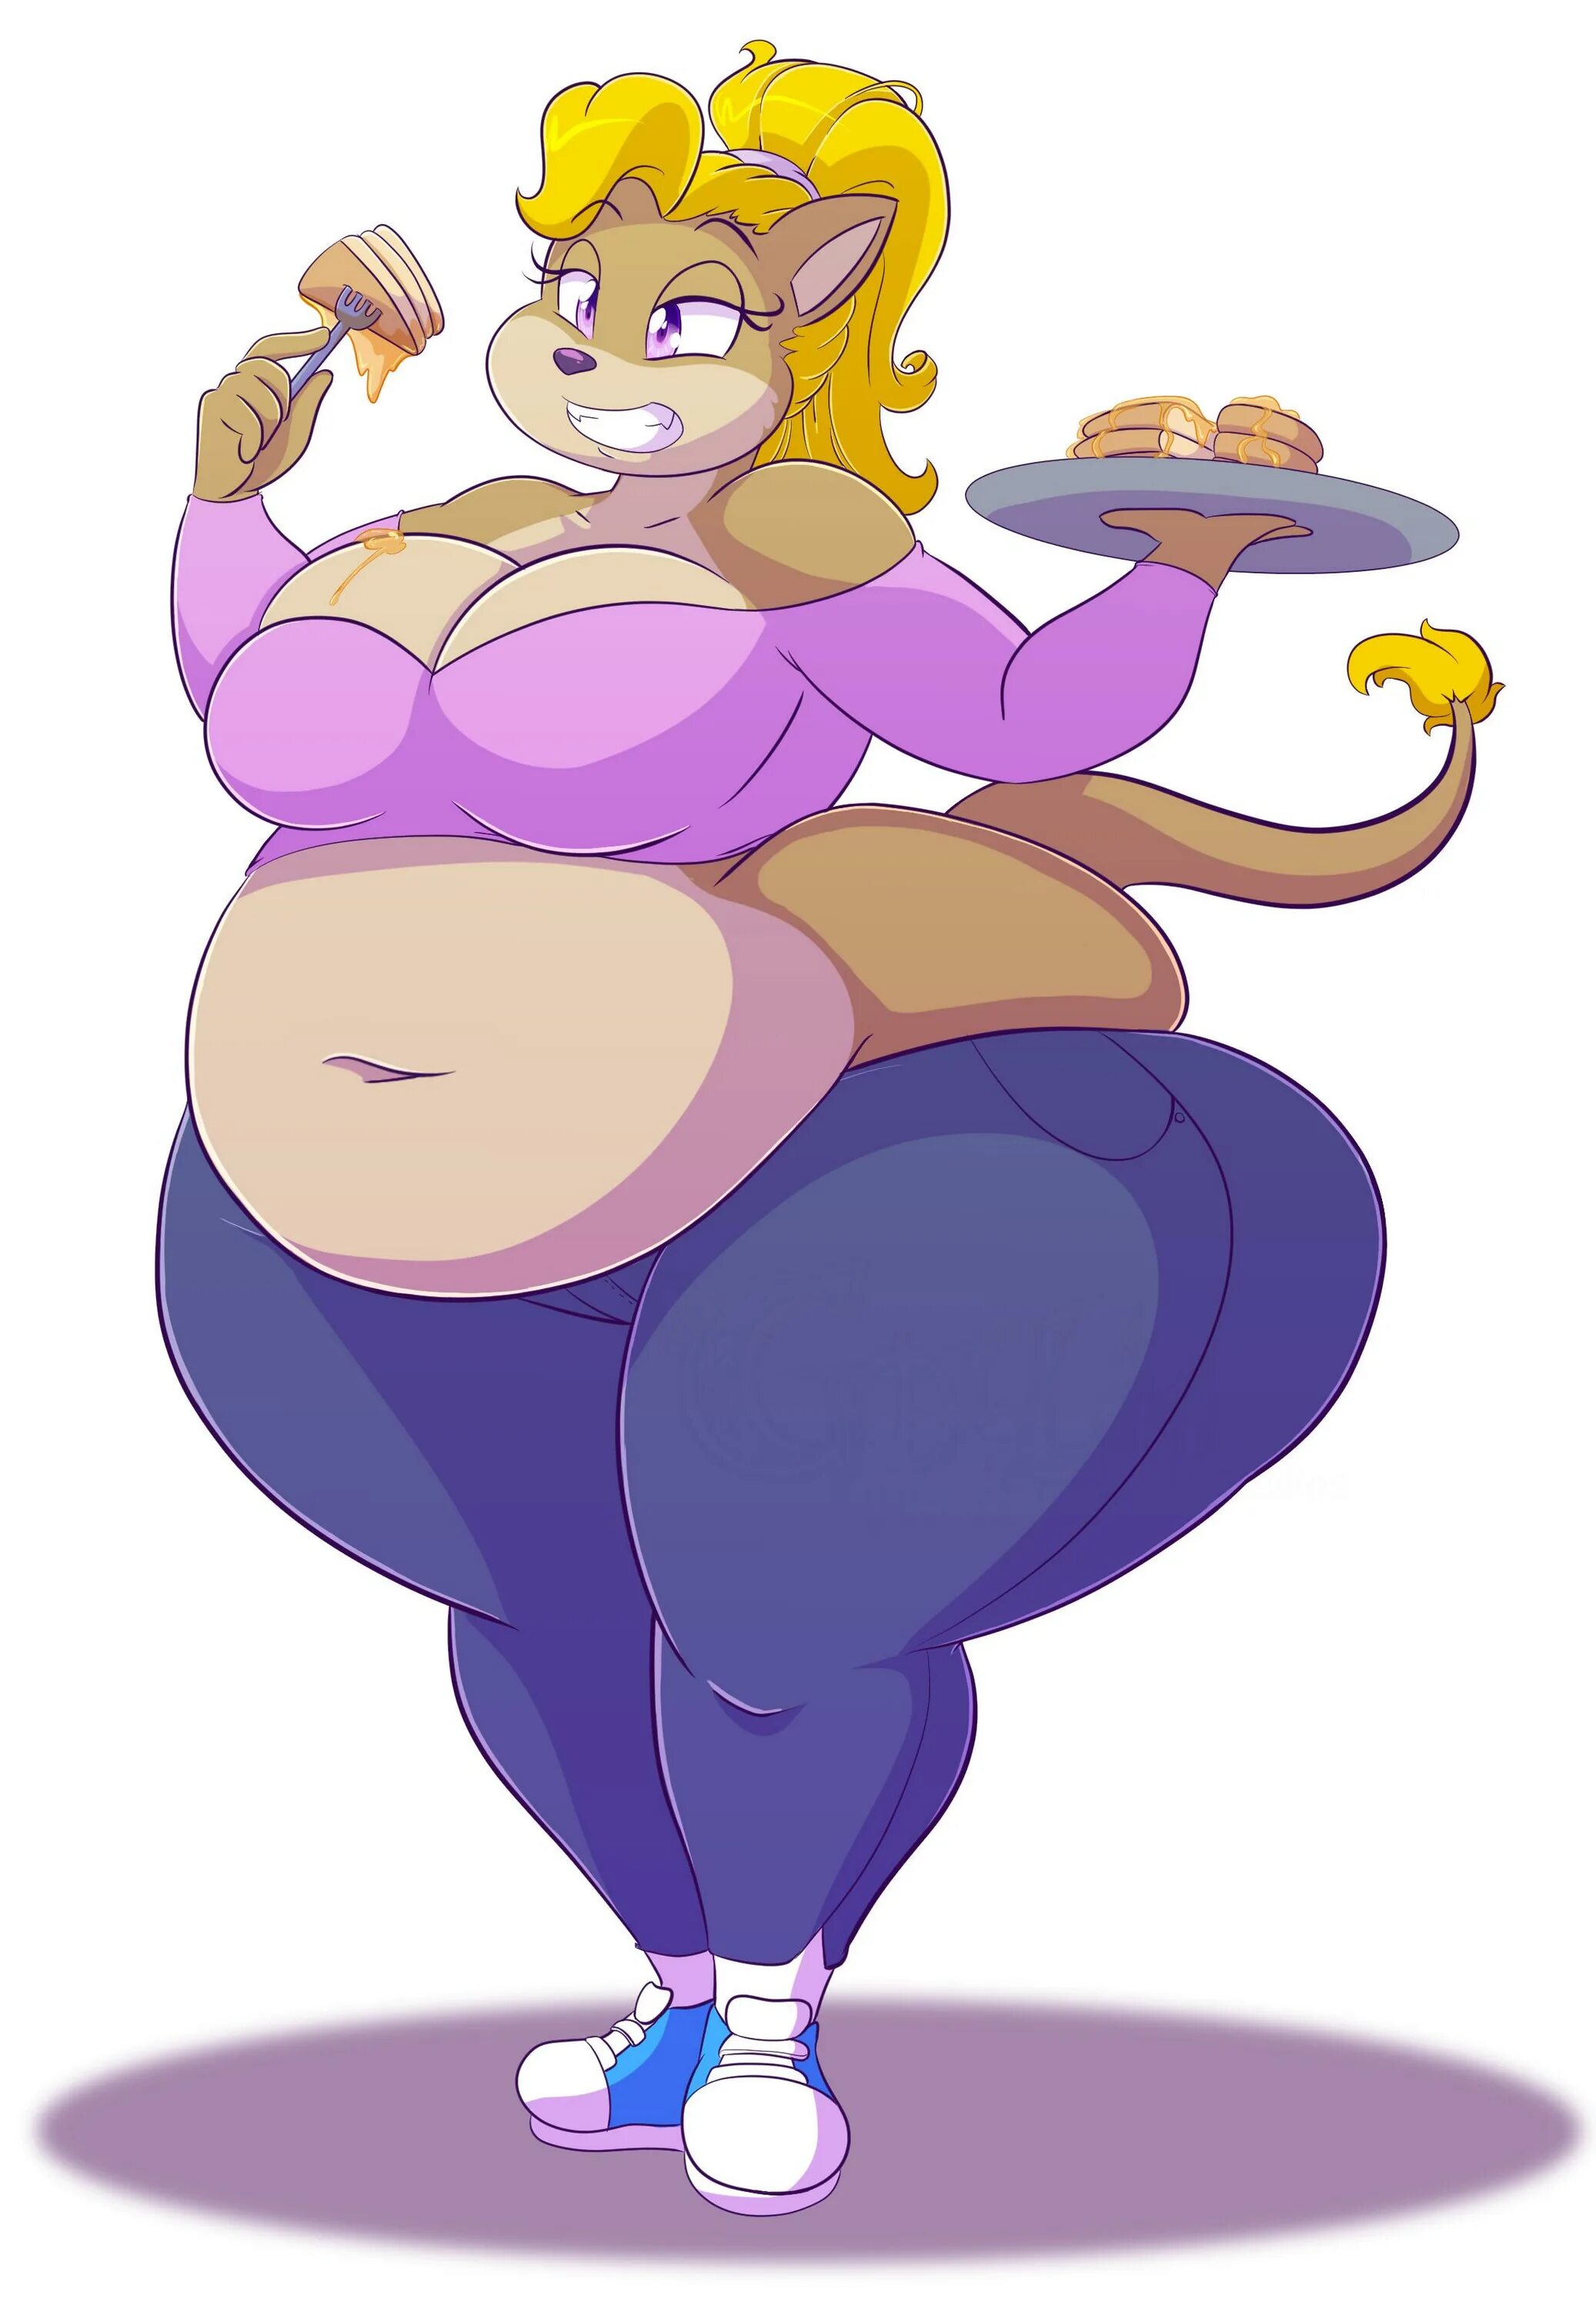 Furry big belly. LORDSTORMCALLER Valerie.